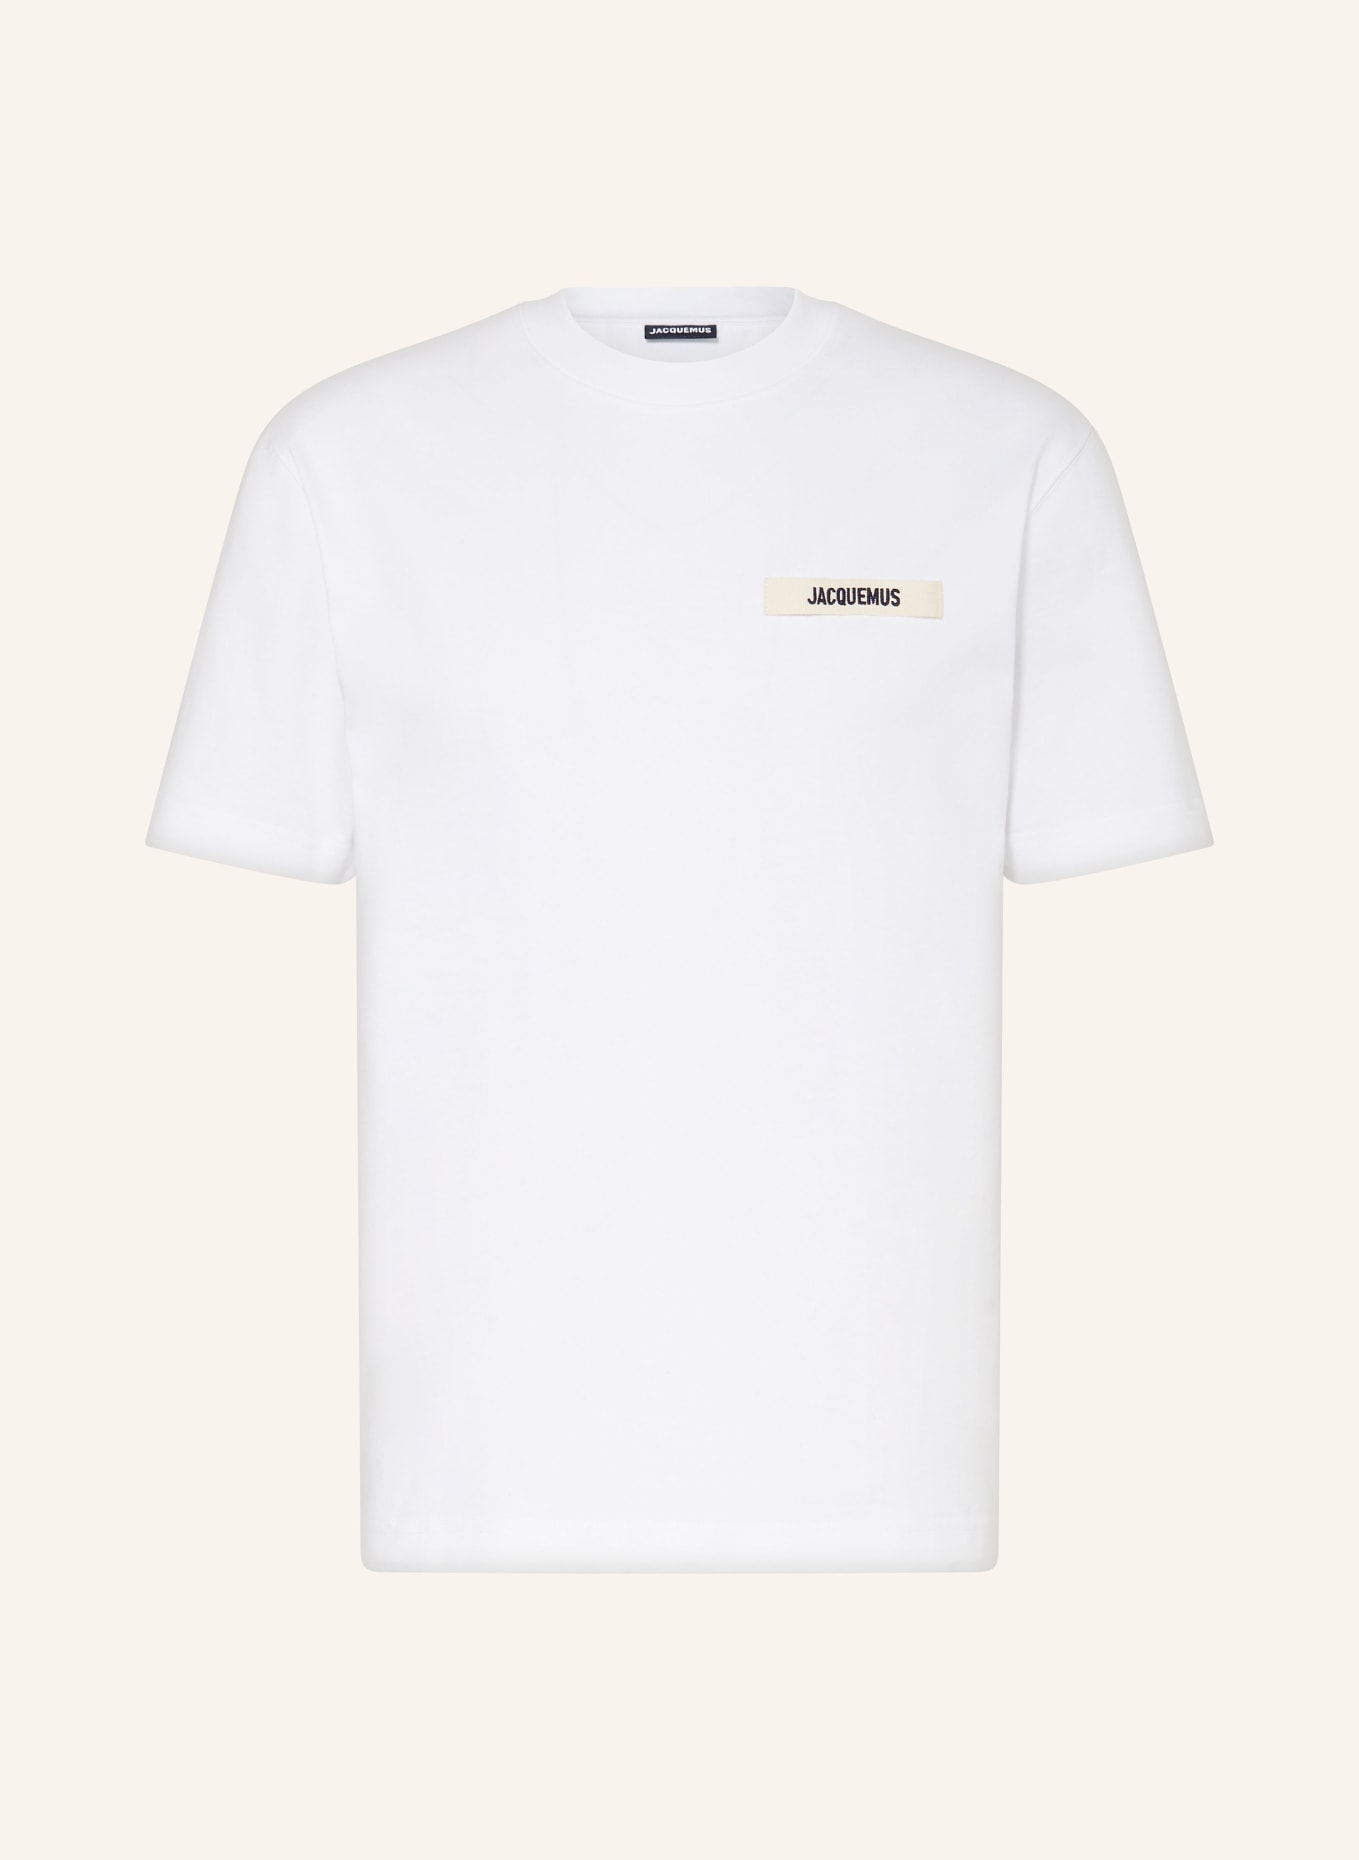 JACQUEMUS T-Shirt LE TSHIRT GROS GRAIN, Farbe: WEISS (Bild 1)